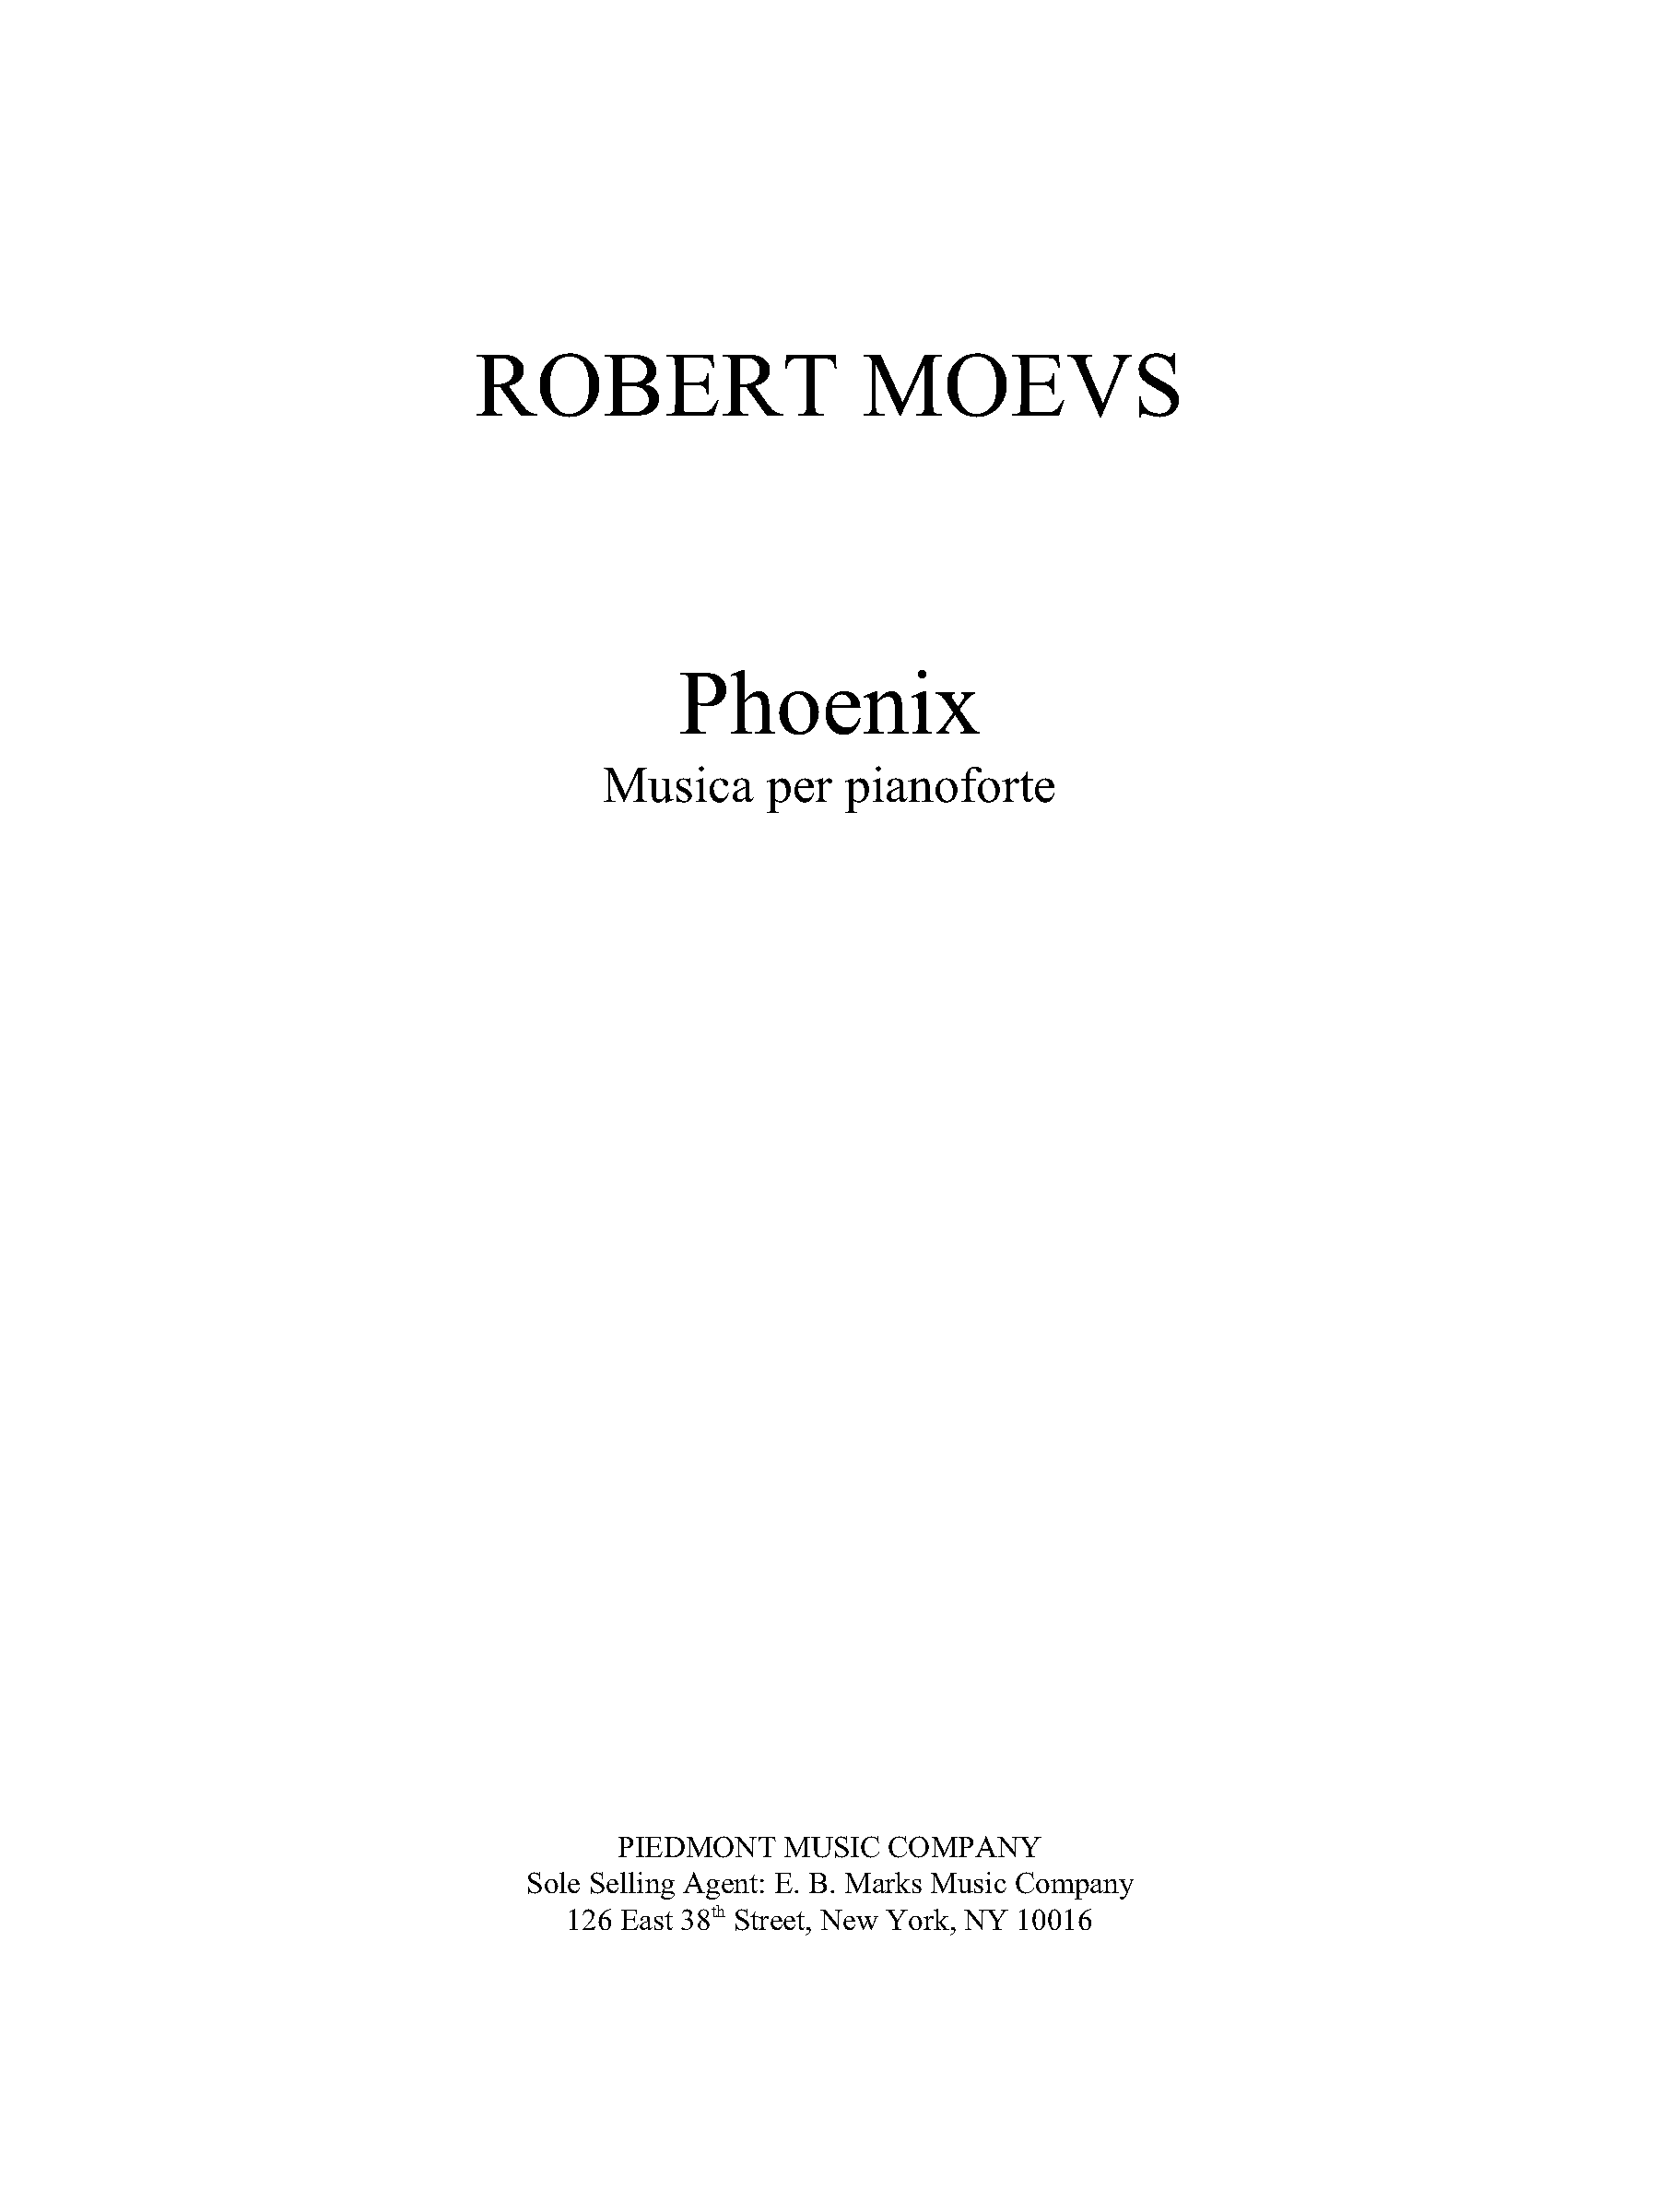 Phoenix for Piano solo